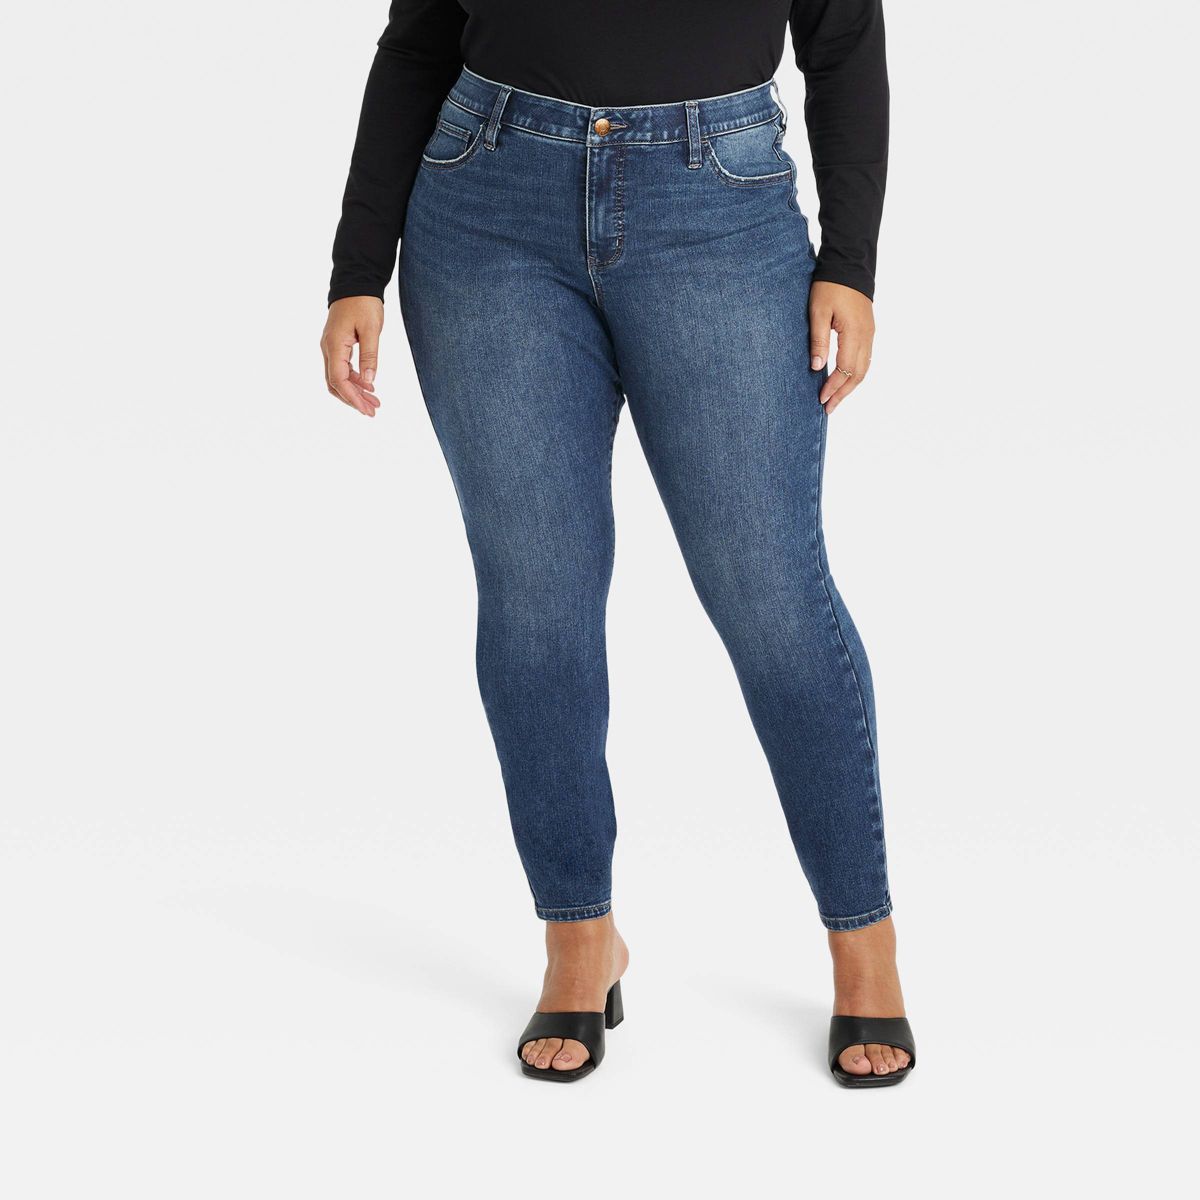 Women's Mid-Rise Skinny Jeans - Ava & Viv™ | Target